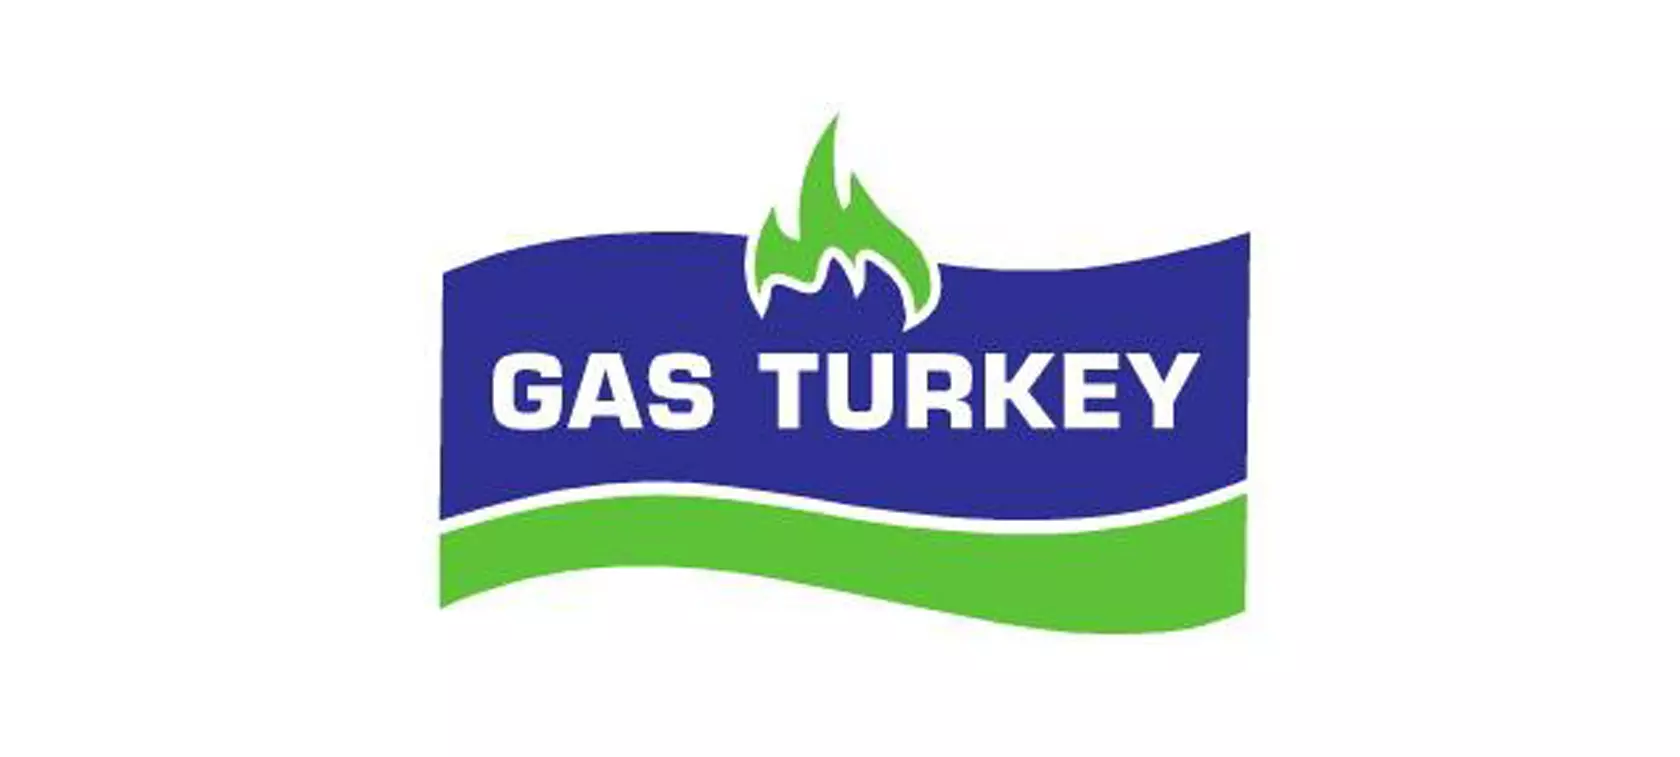 Gas Turkey 2015 - znamy dokładną datę